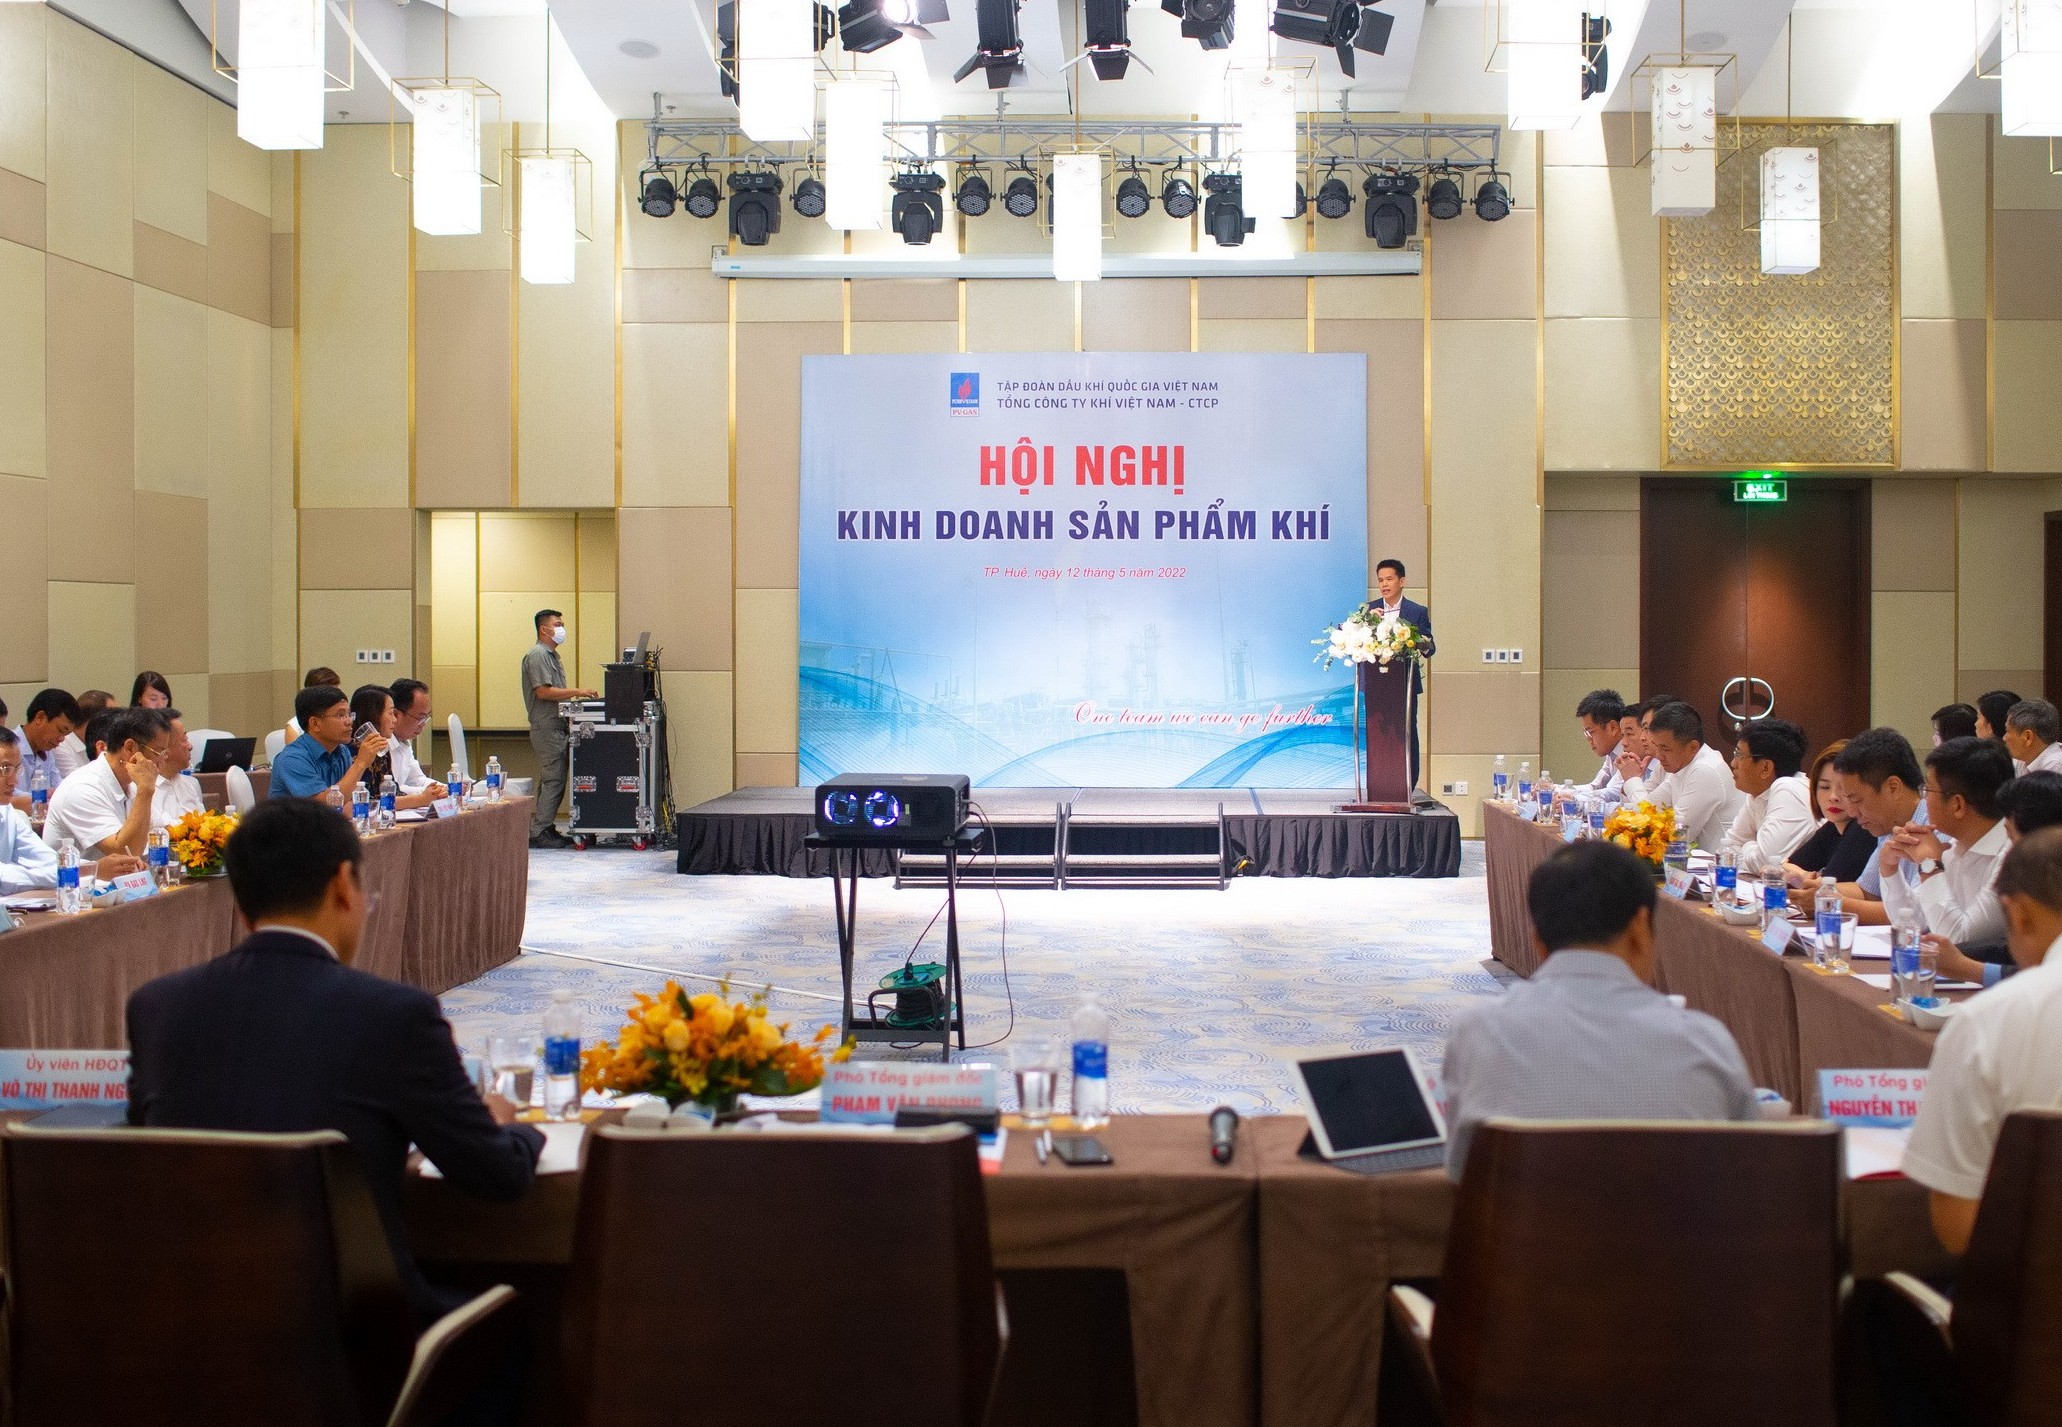 Hội nghị kinh doanh sản phẩm khí PV GAS năm 2022